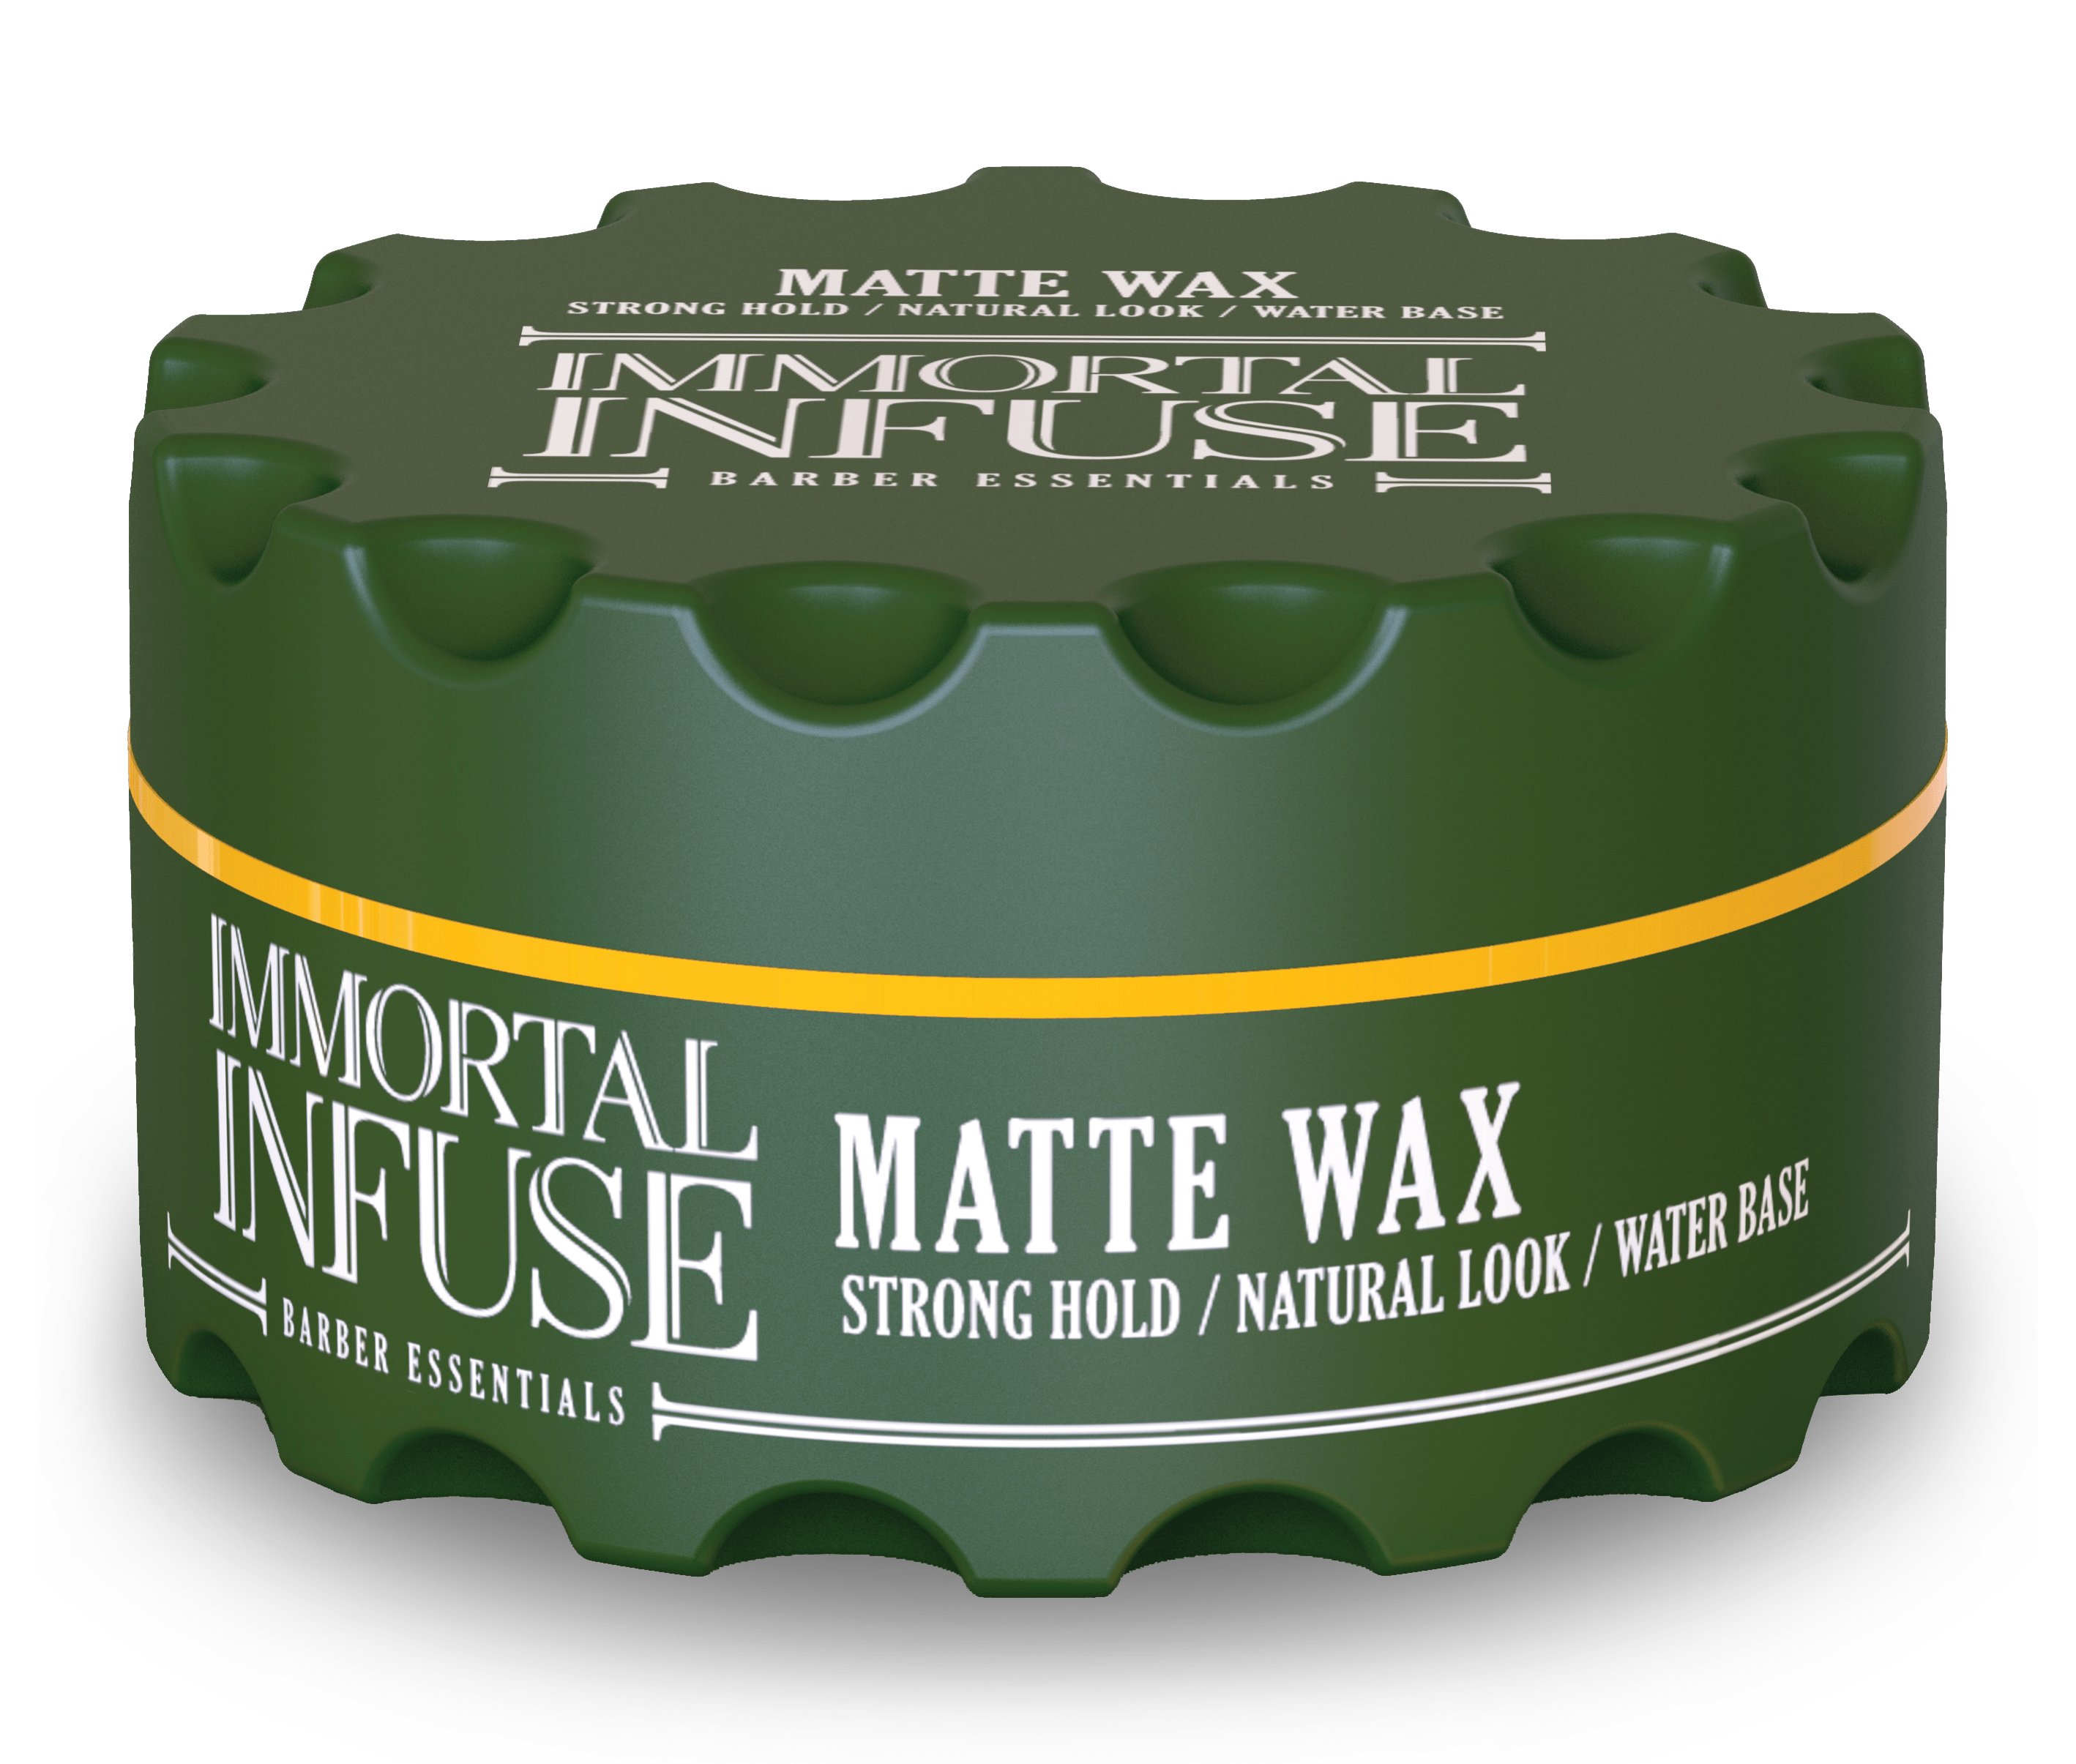 MATTE WAX